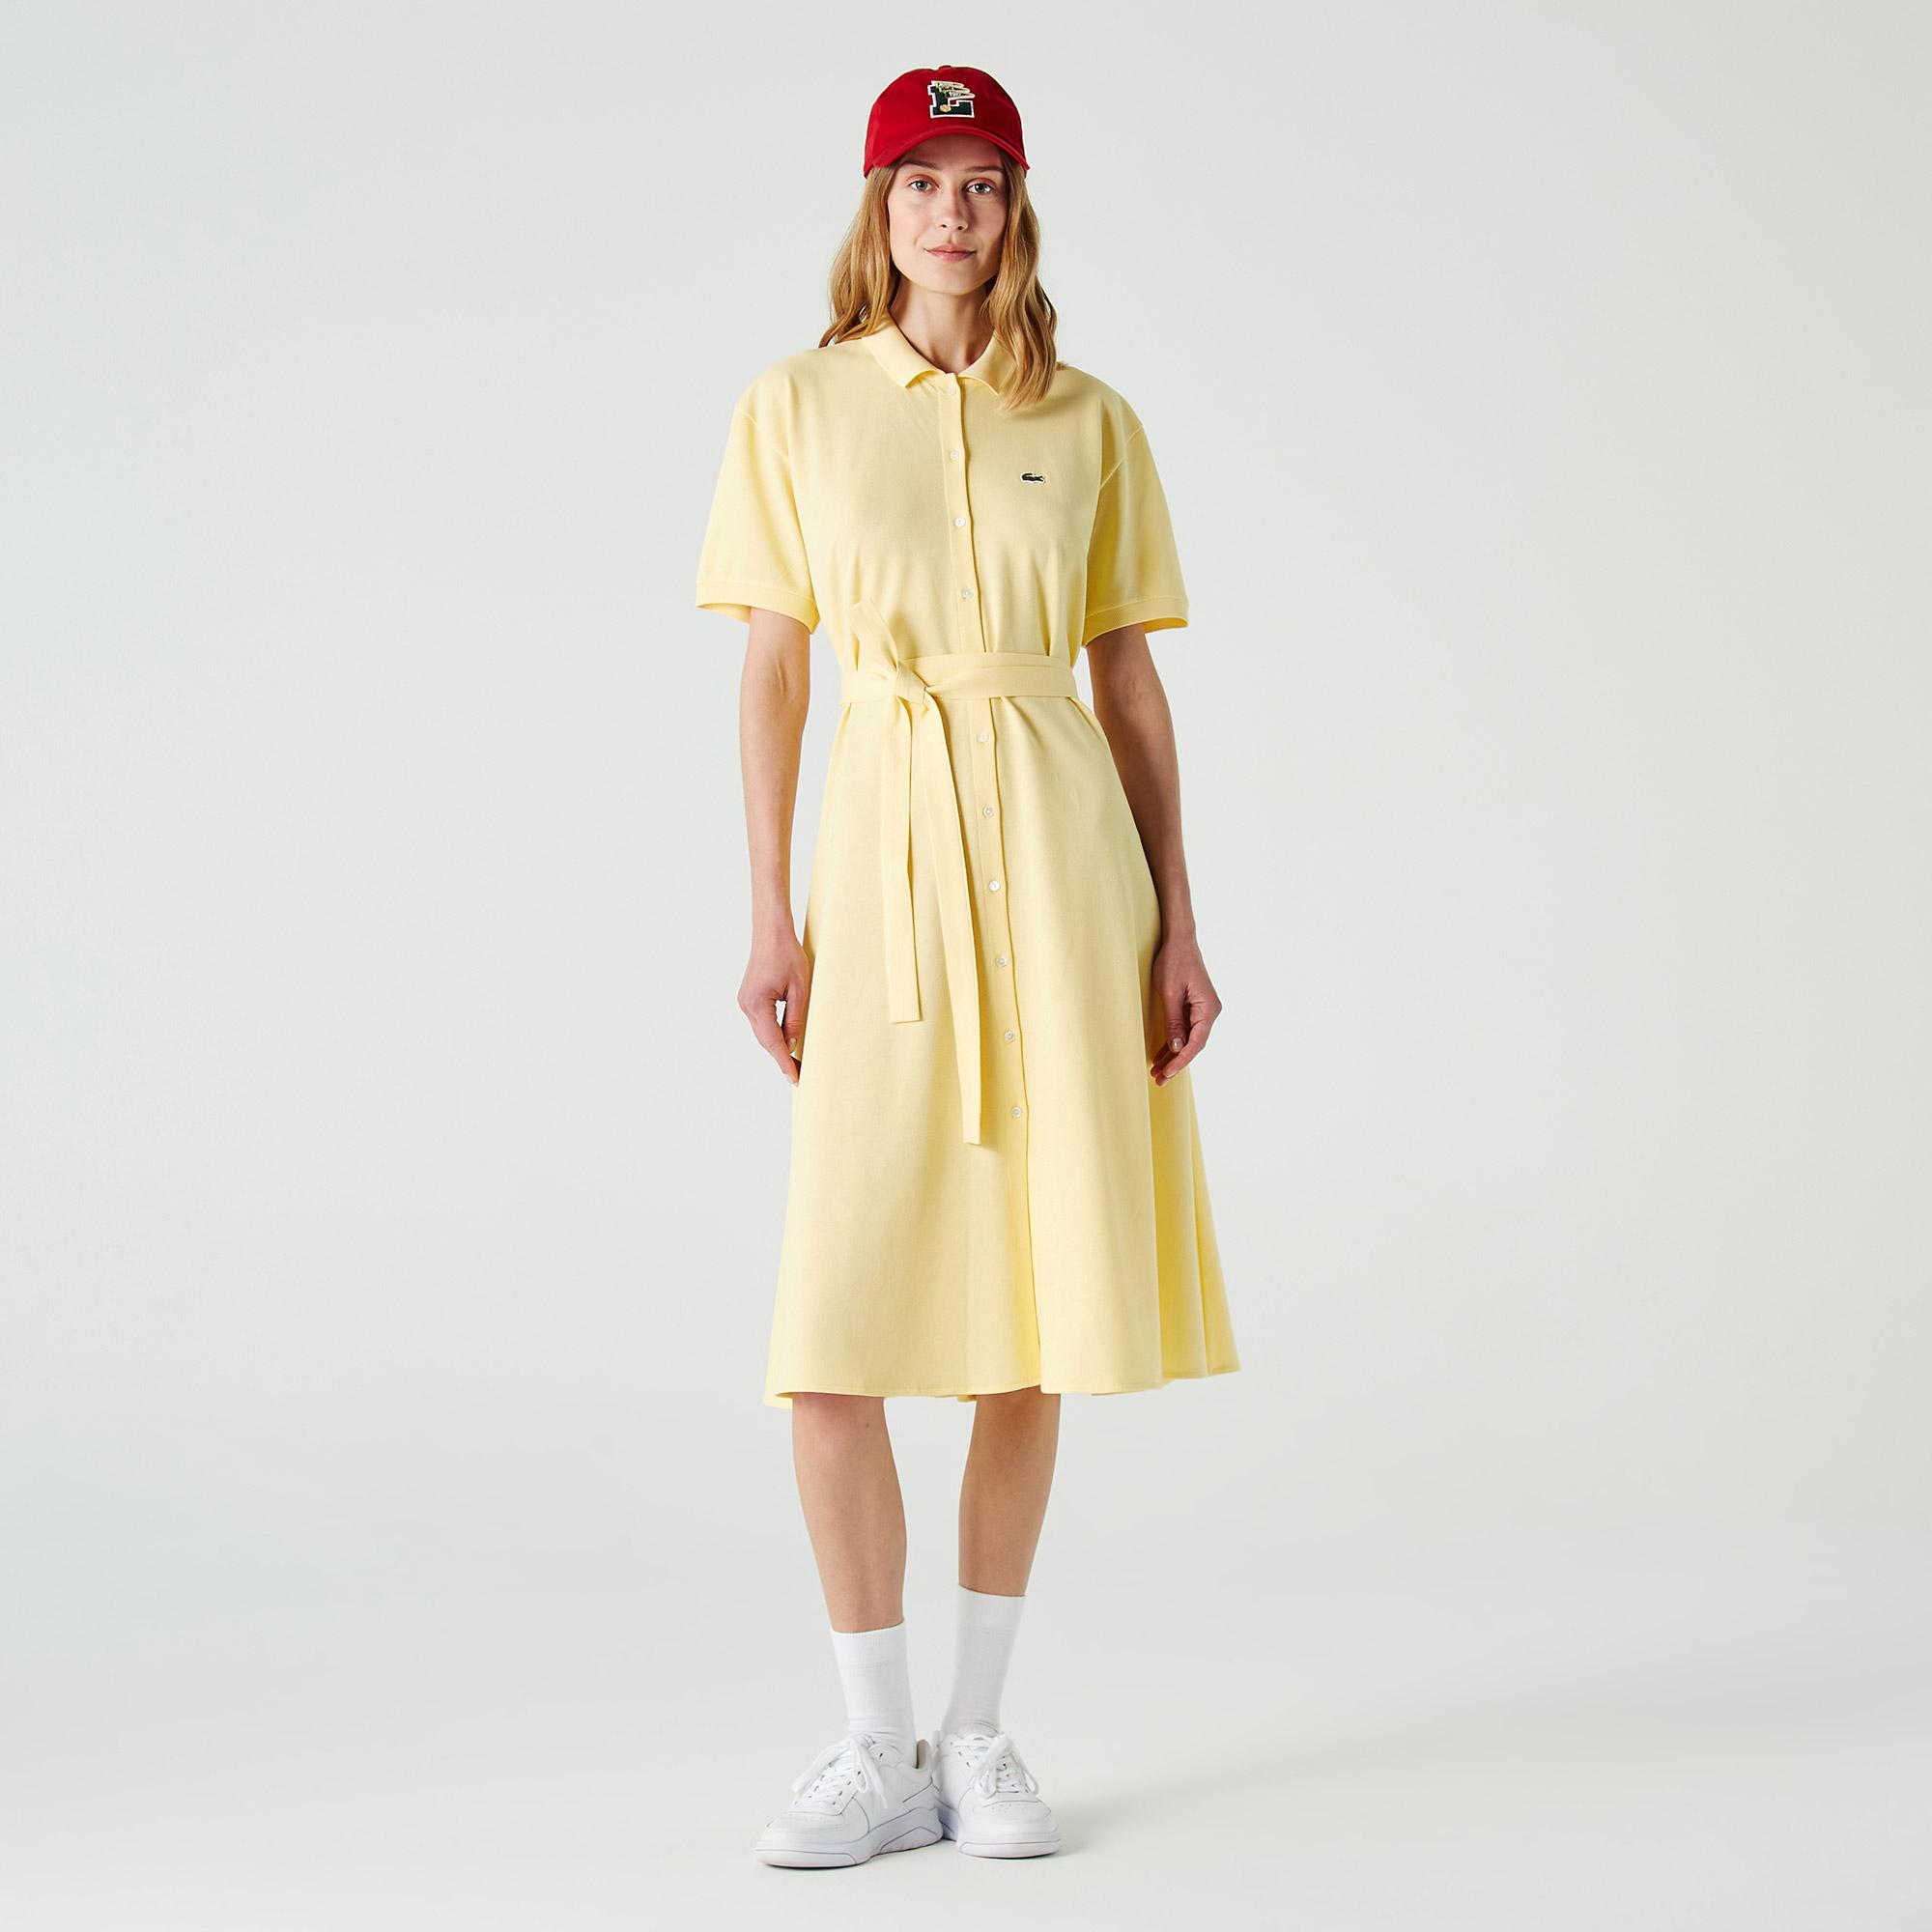 Lacoste Kadın Loose Fit Kısa Kollu Gömlek Yaka Sarı Elbise. 4